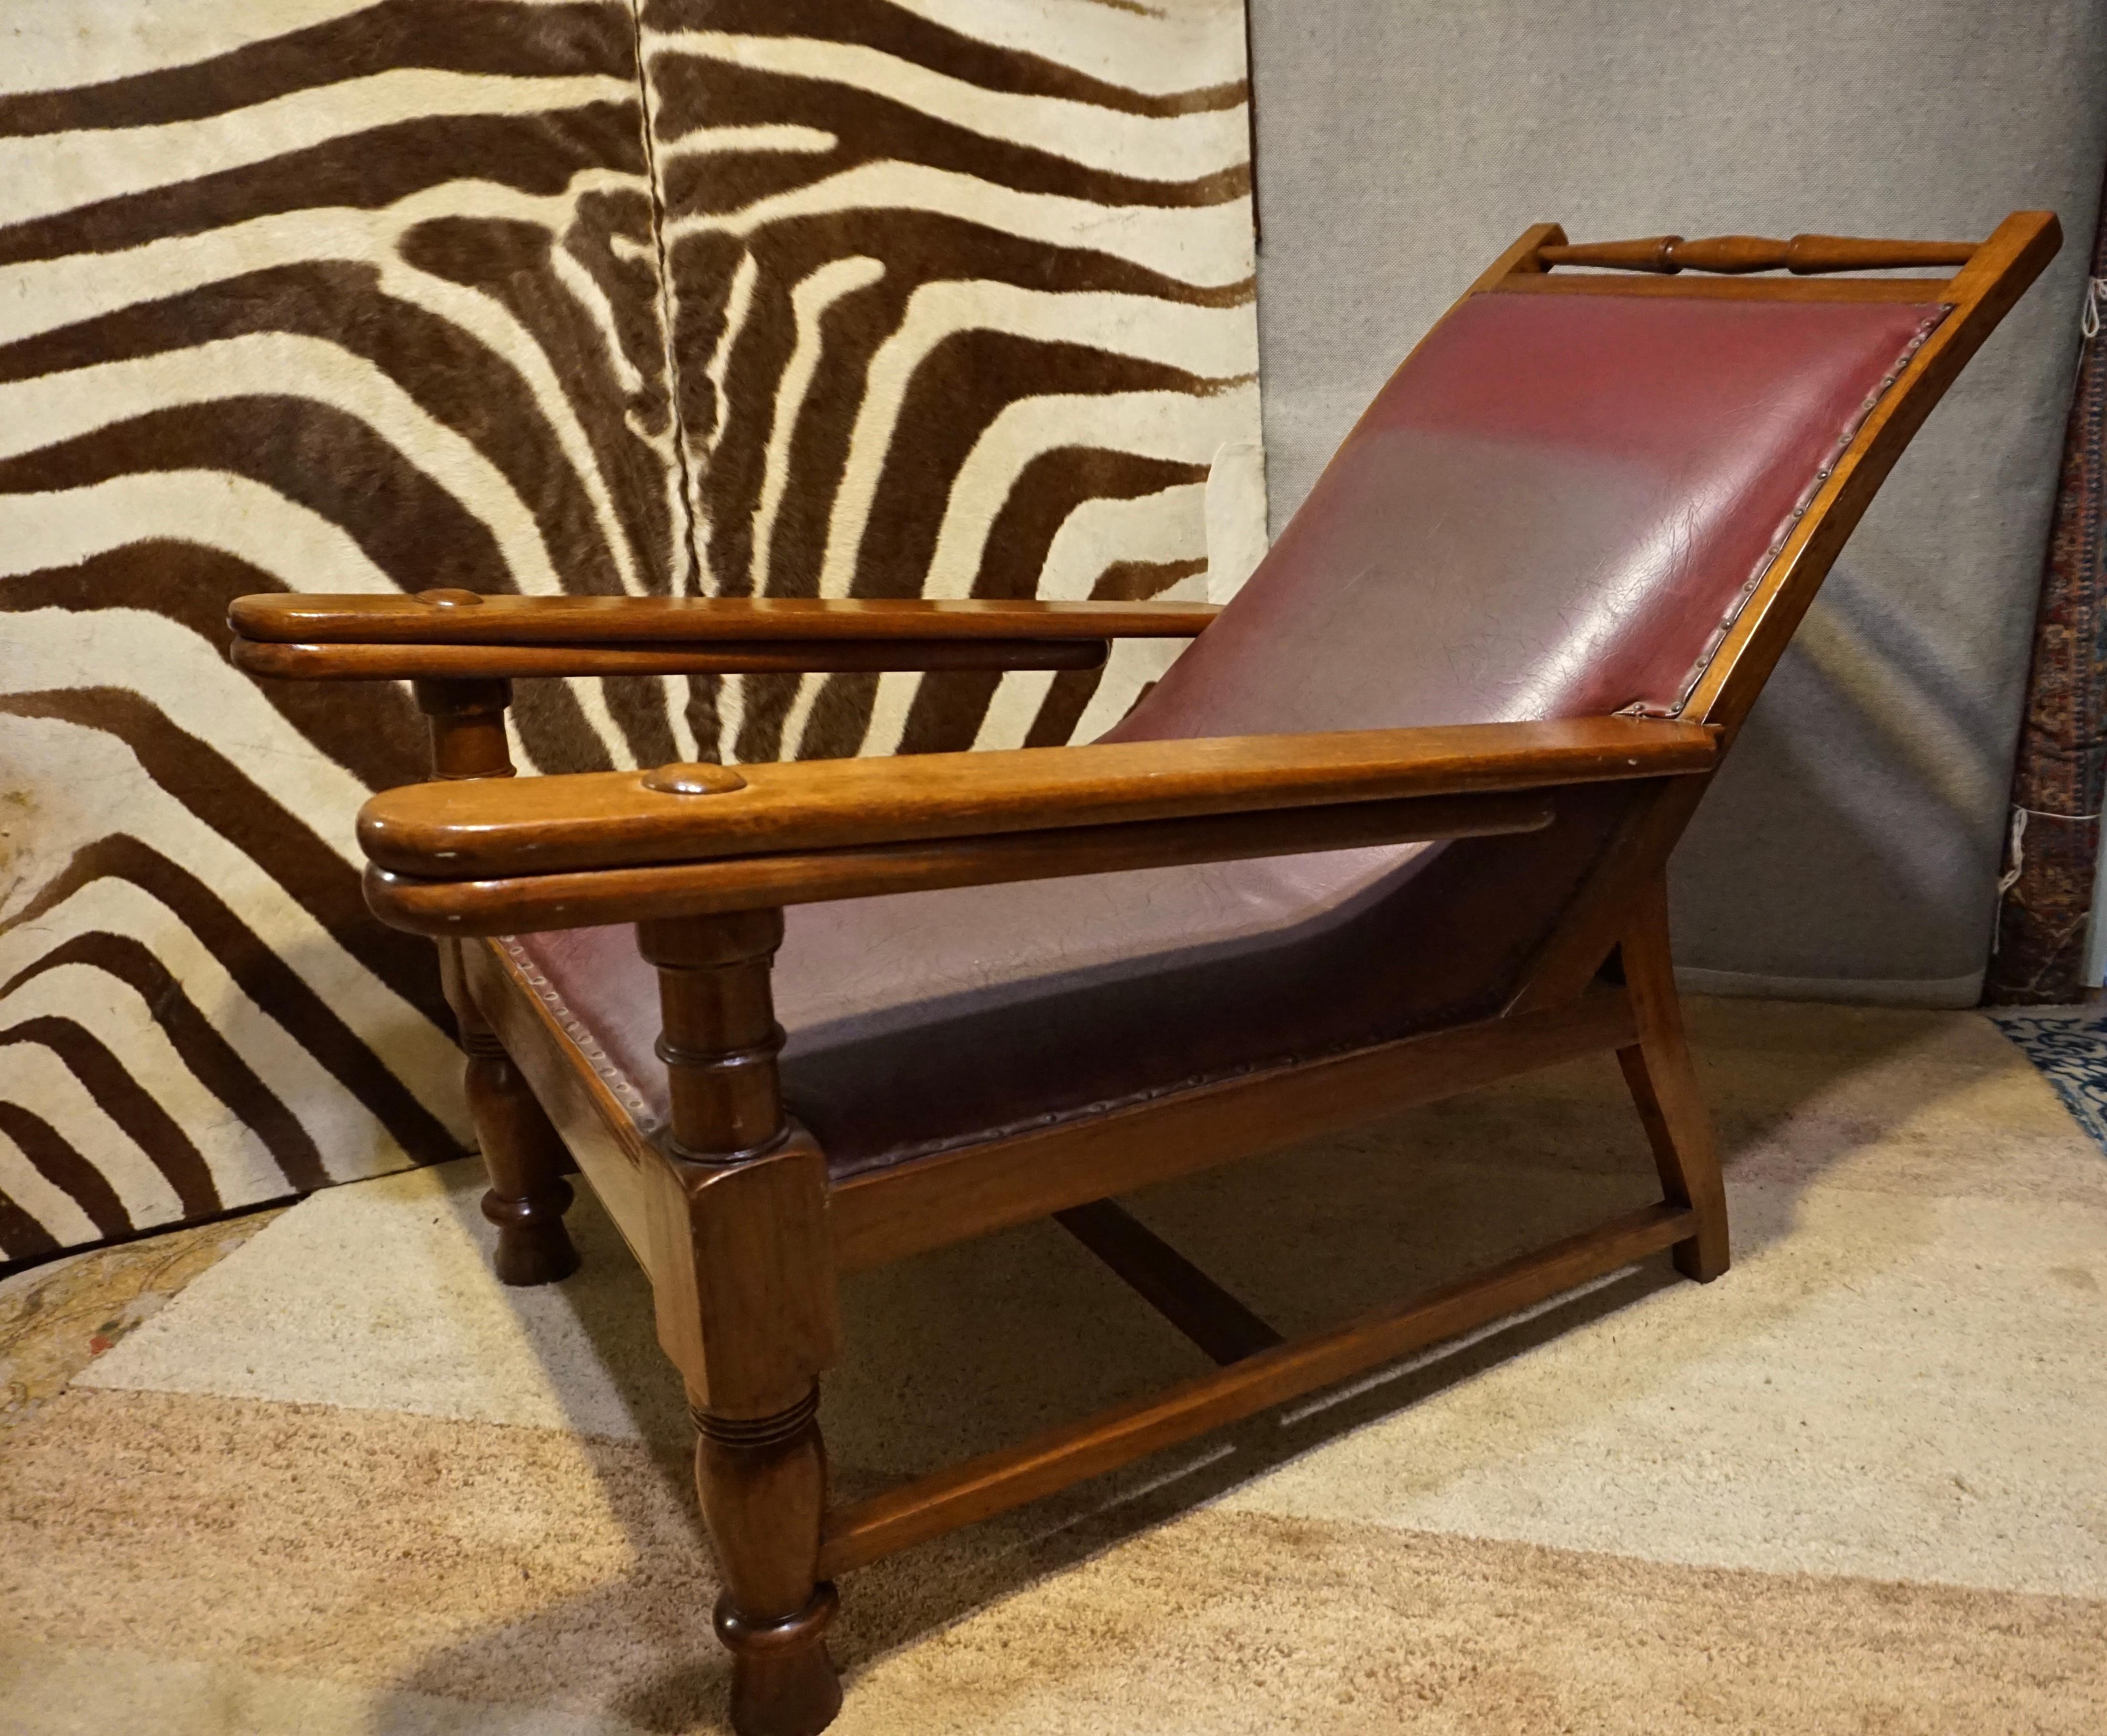 Circa 1890

Rare fauteuil de salon en teck et cuir qui était autrefois utilisé dans une plantation de thé en Inde. Fabriqué à la main avec des feuilles qui se transforment en repose-jambes et peuvent être repliées sous les bras. Exceptionnellement